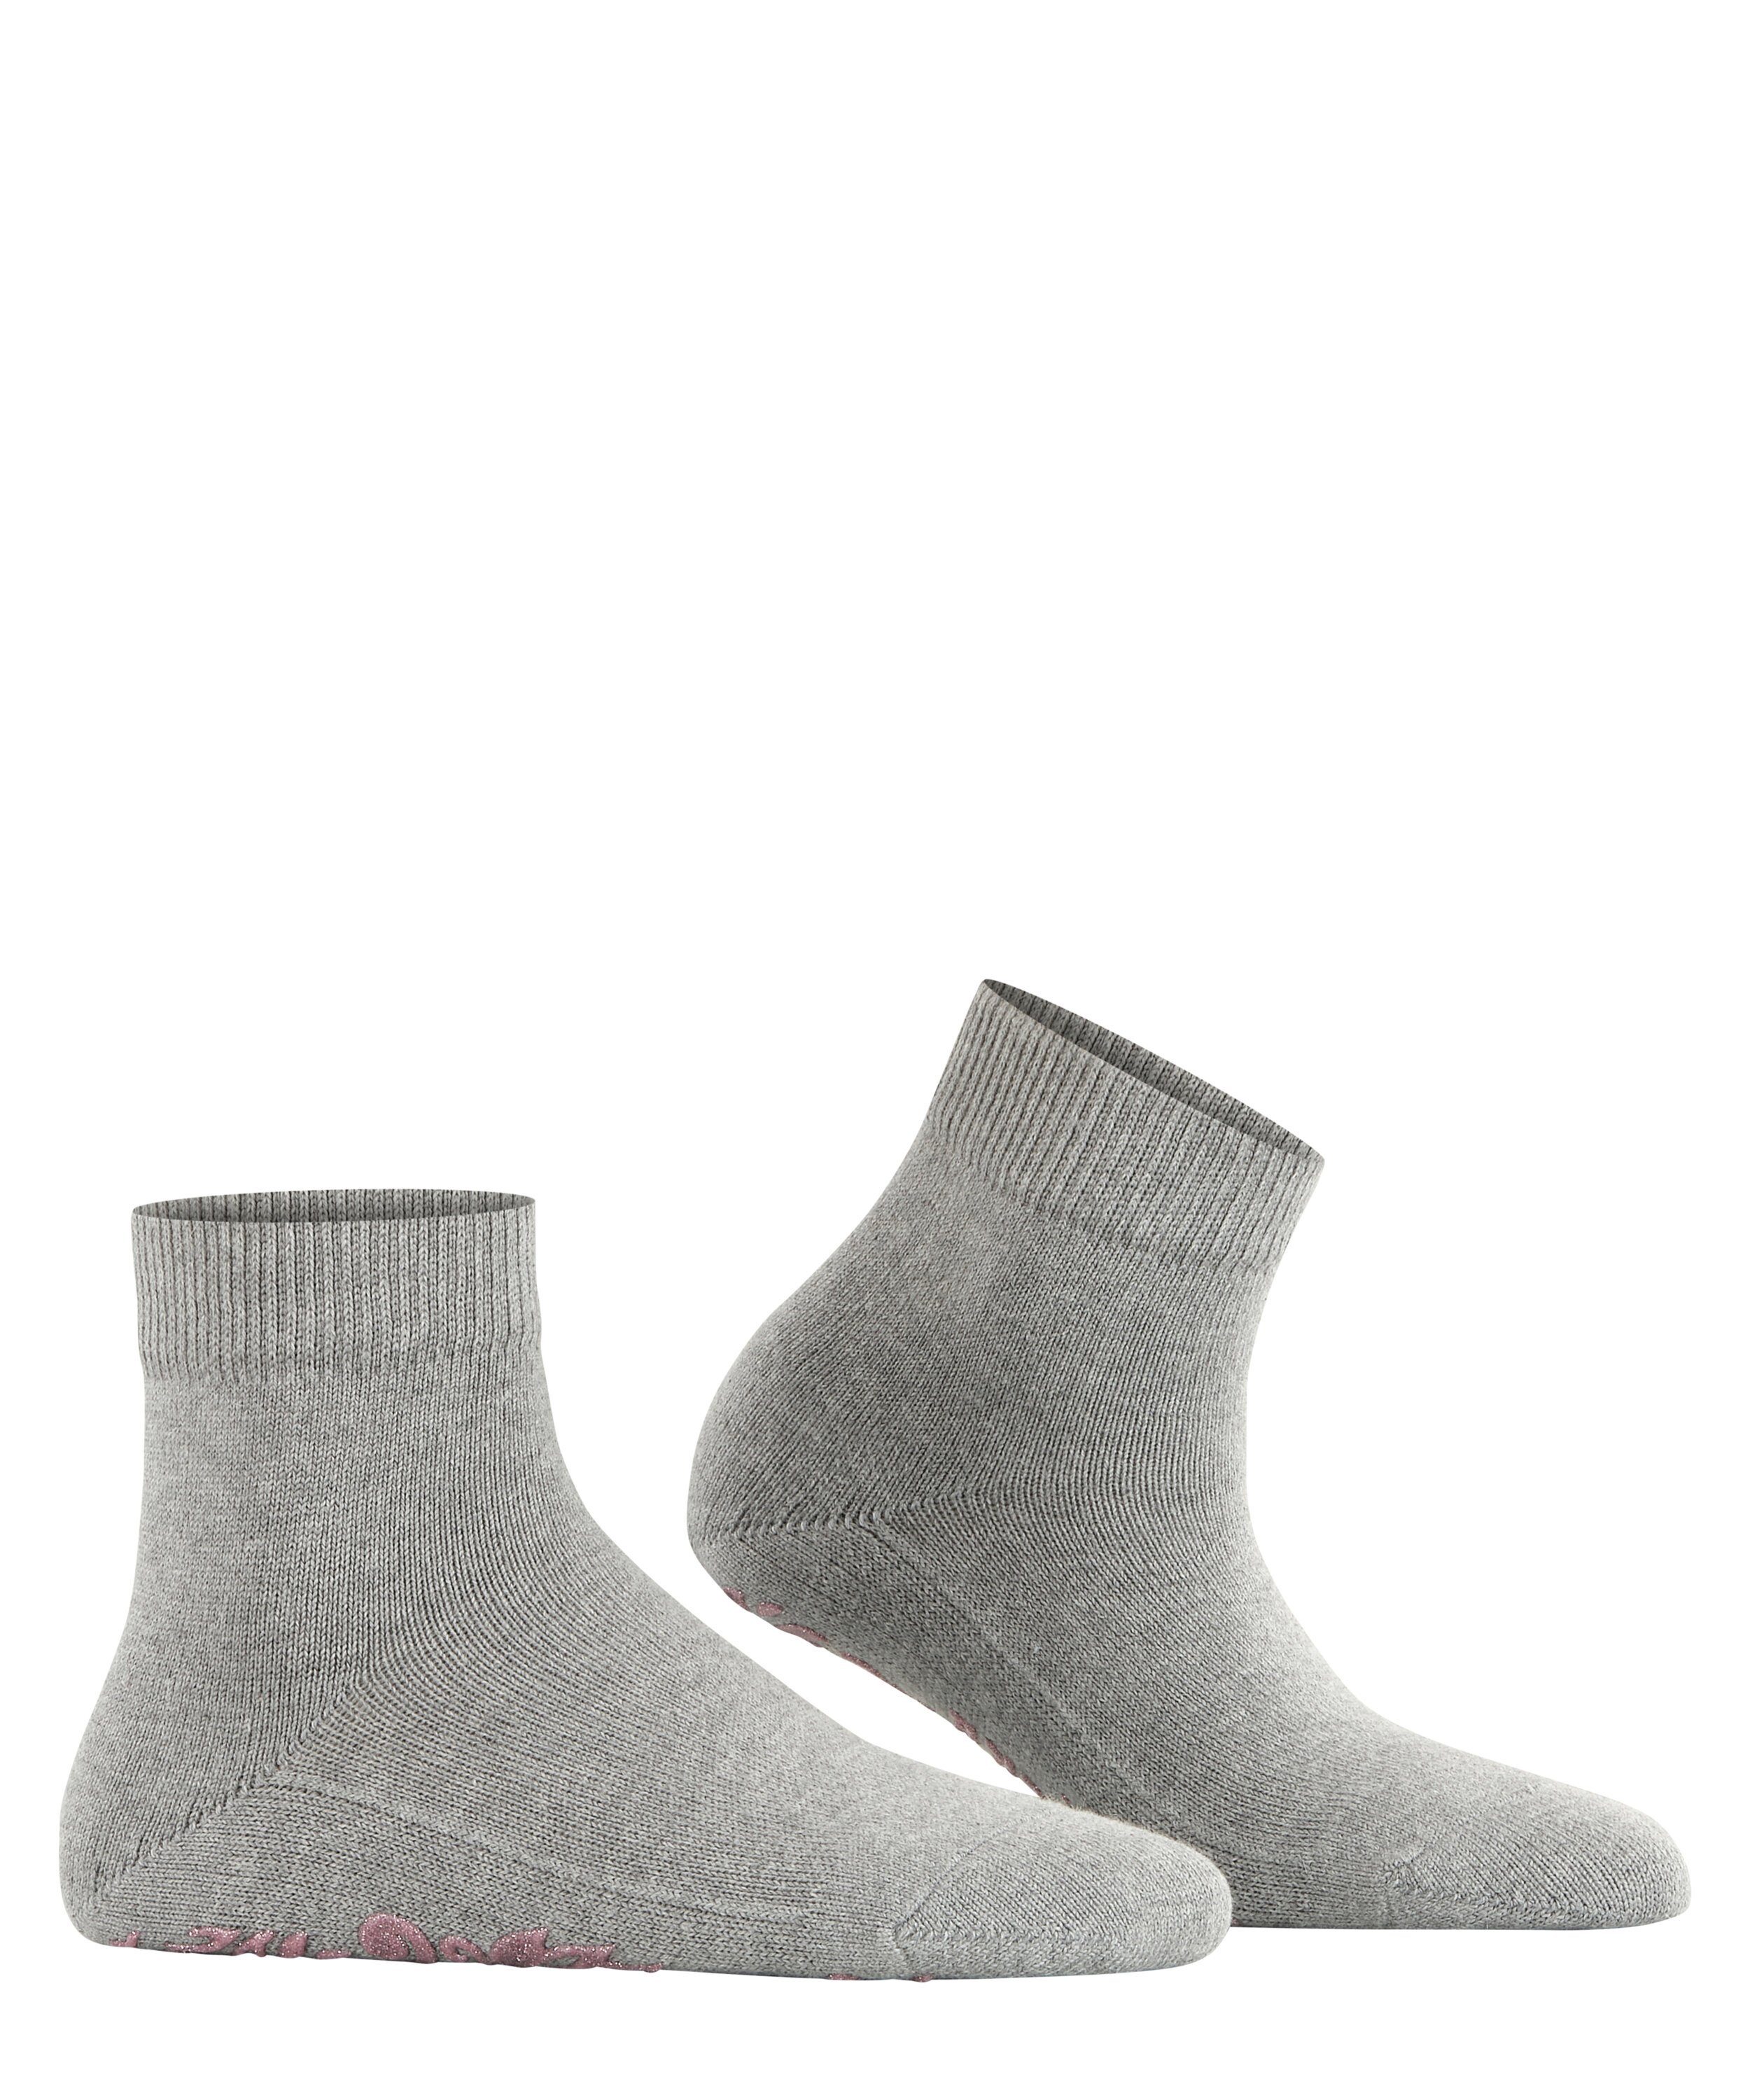 mel (1-Paar) Cuddle Socken (3530) m.grey FALKE Light Pads